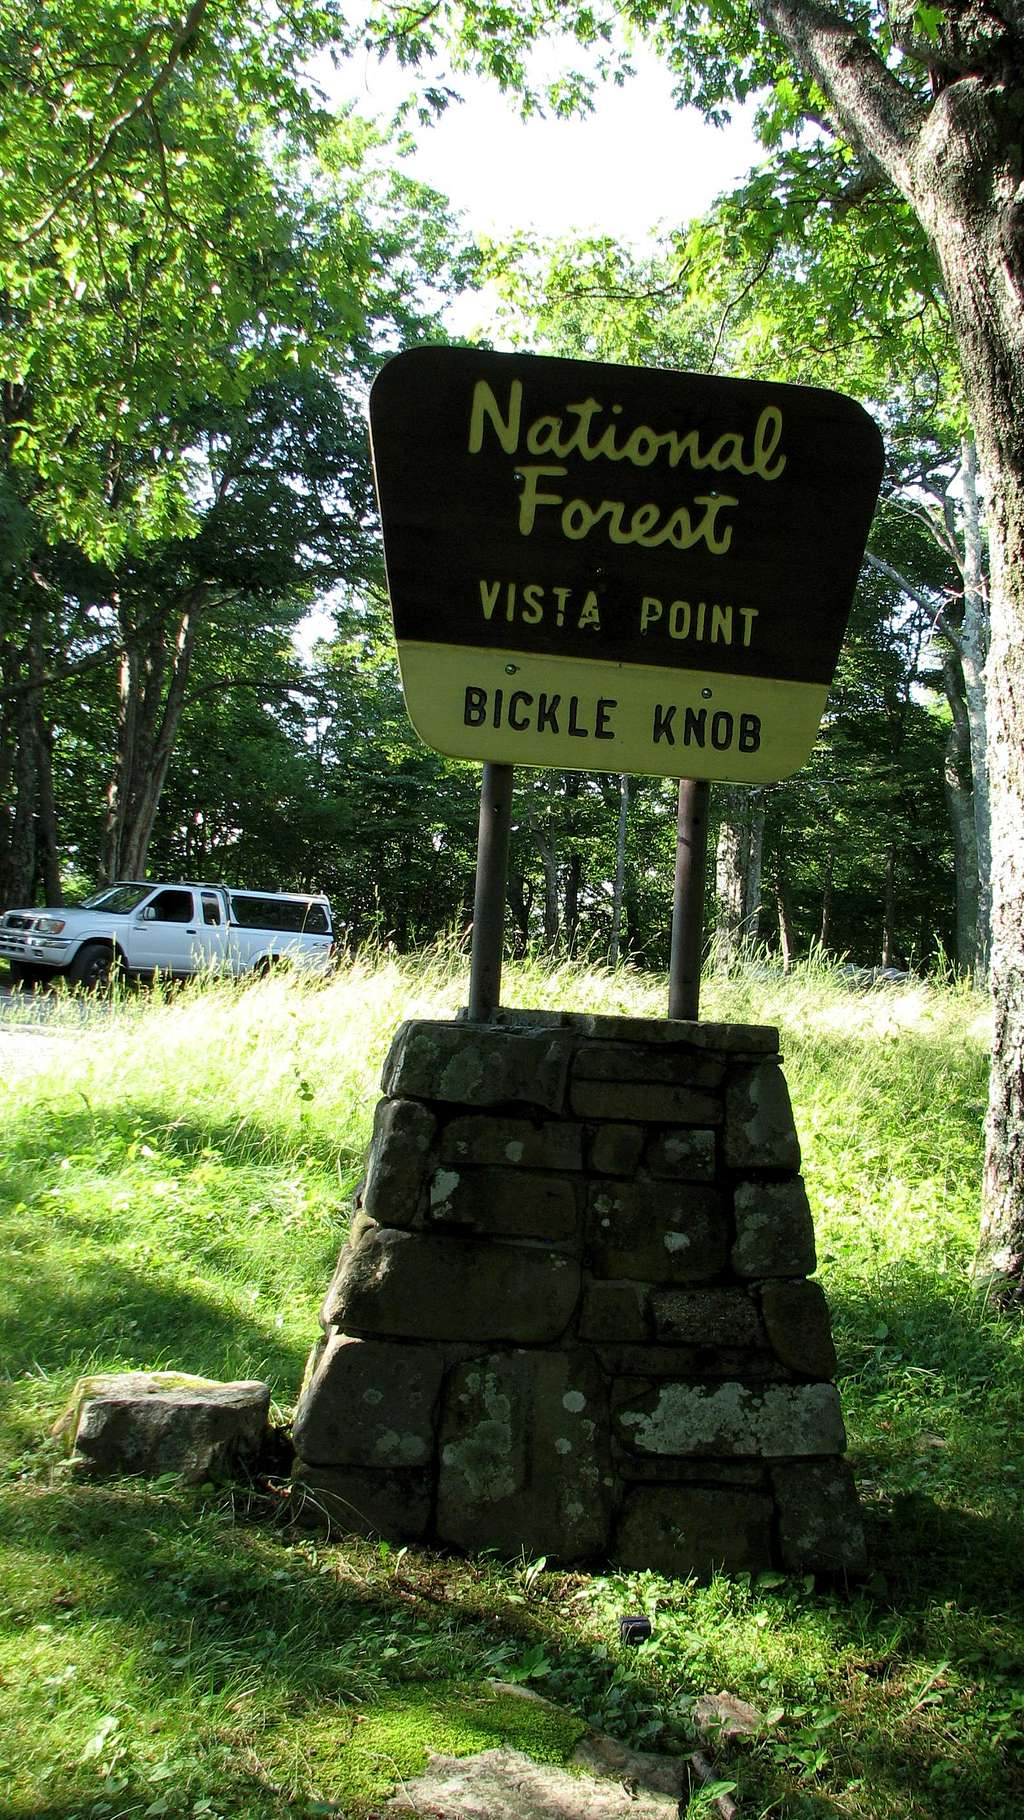 Bickle Knob Recreation Area